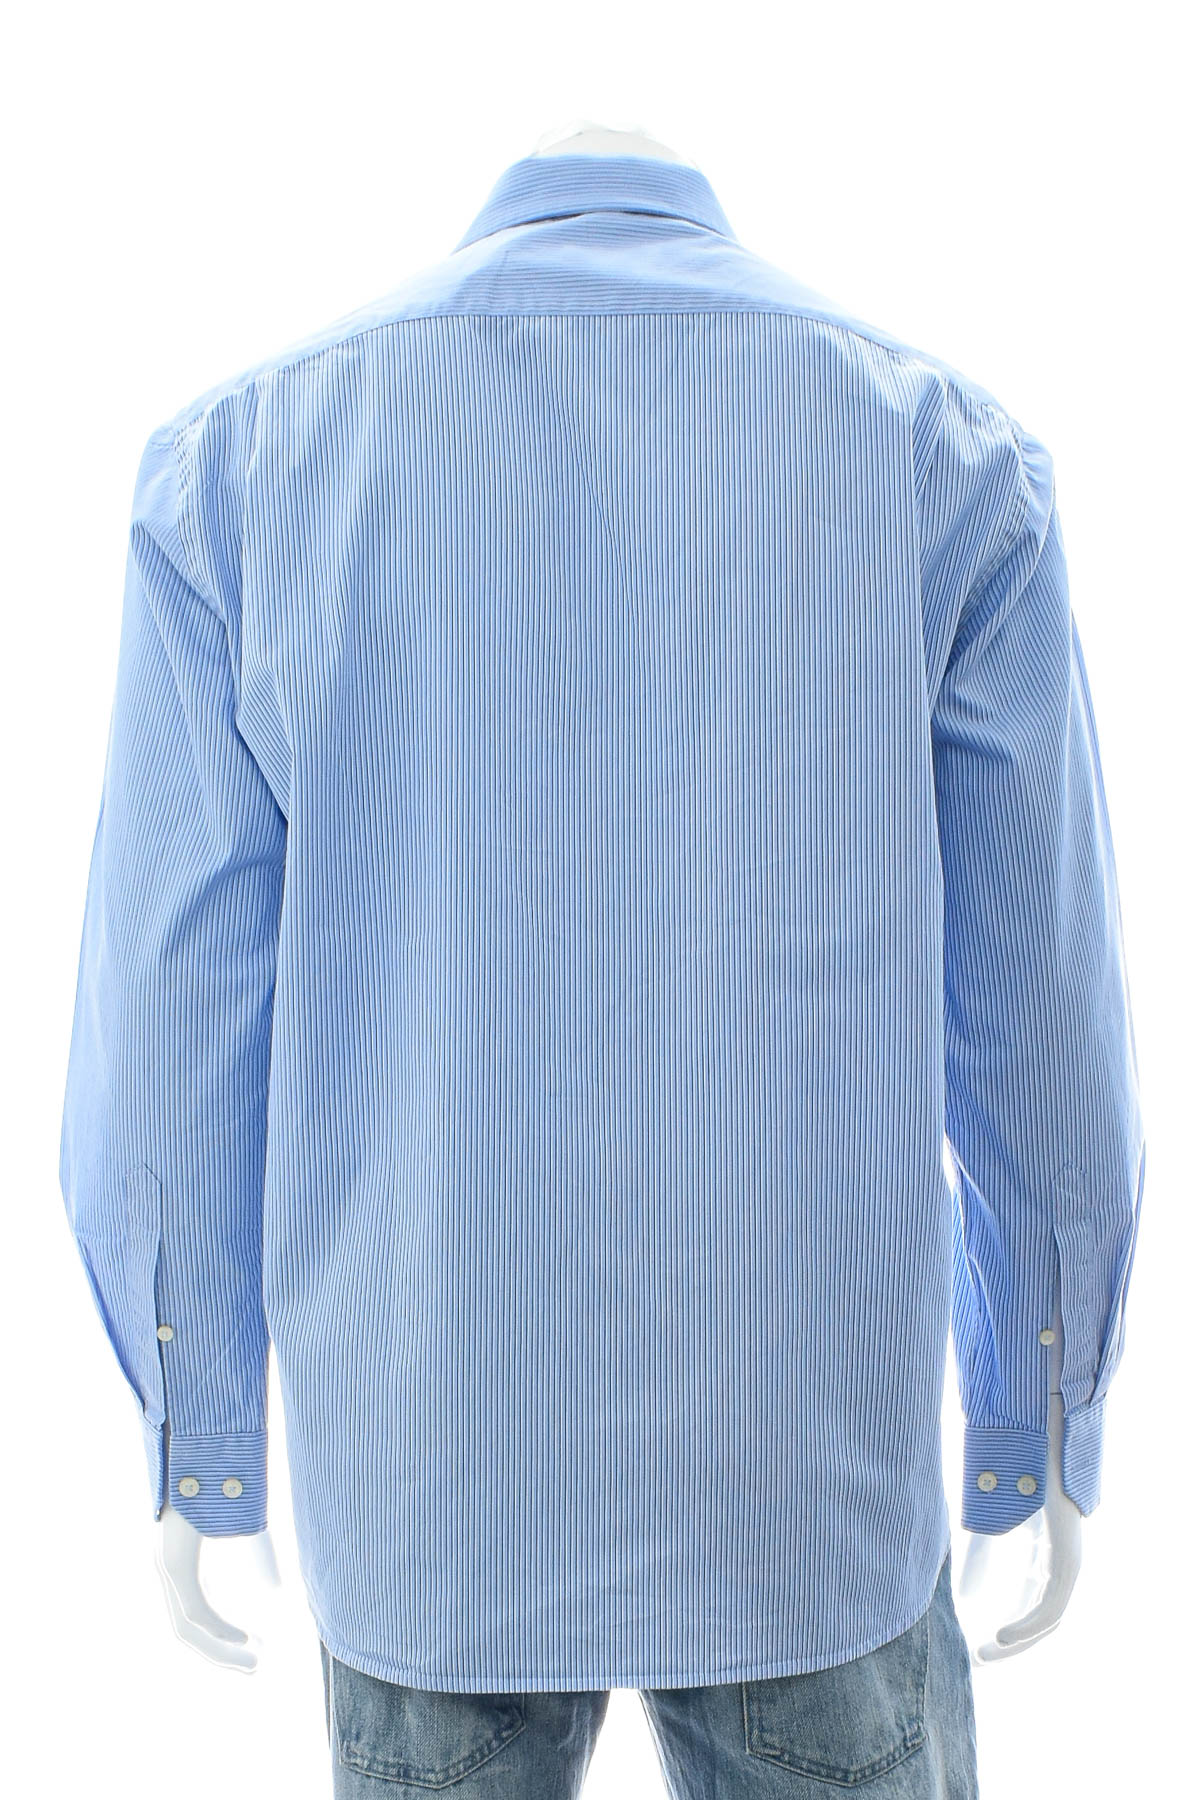 Ανδρικό πουκάμισο - Haupt - 1